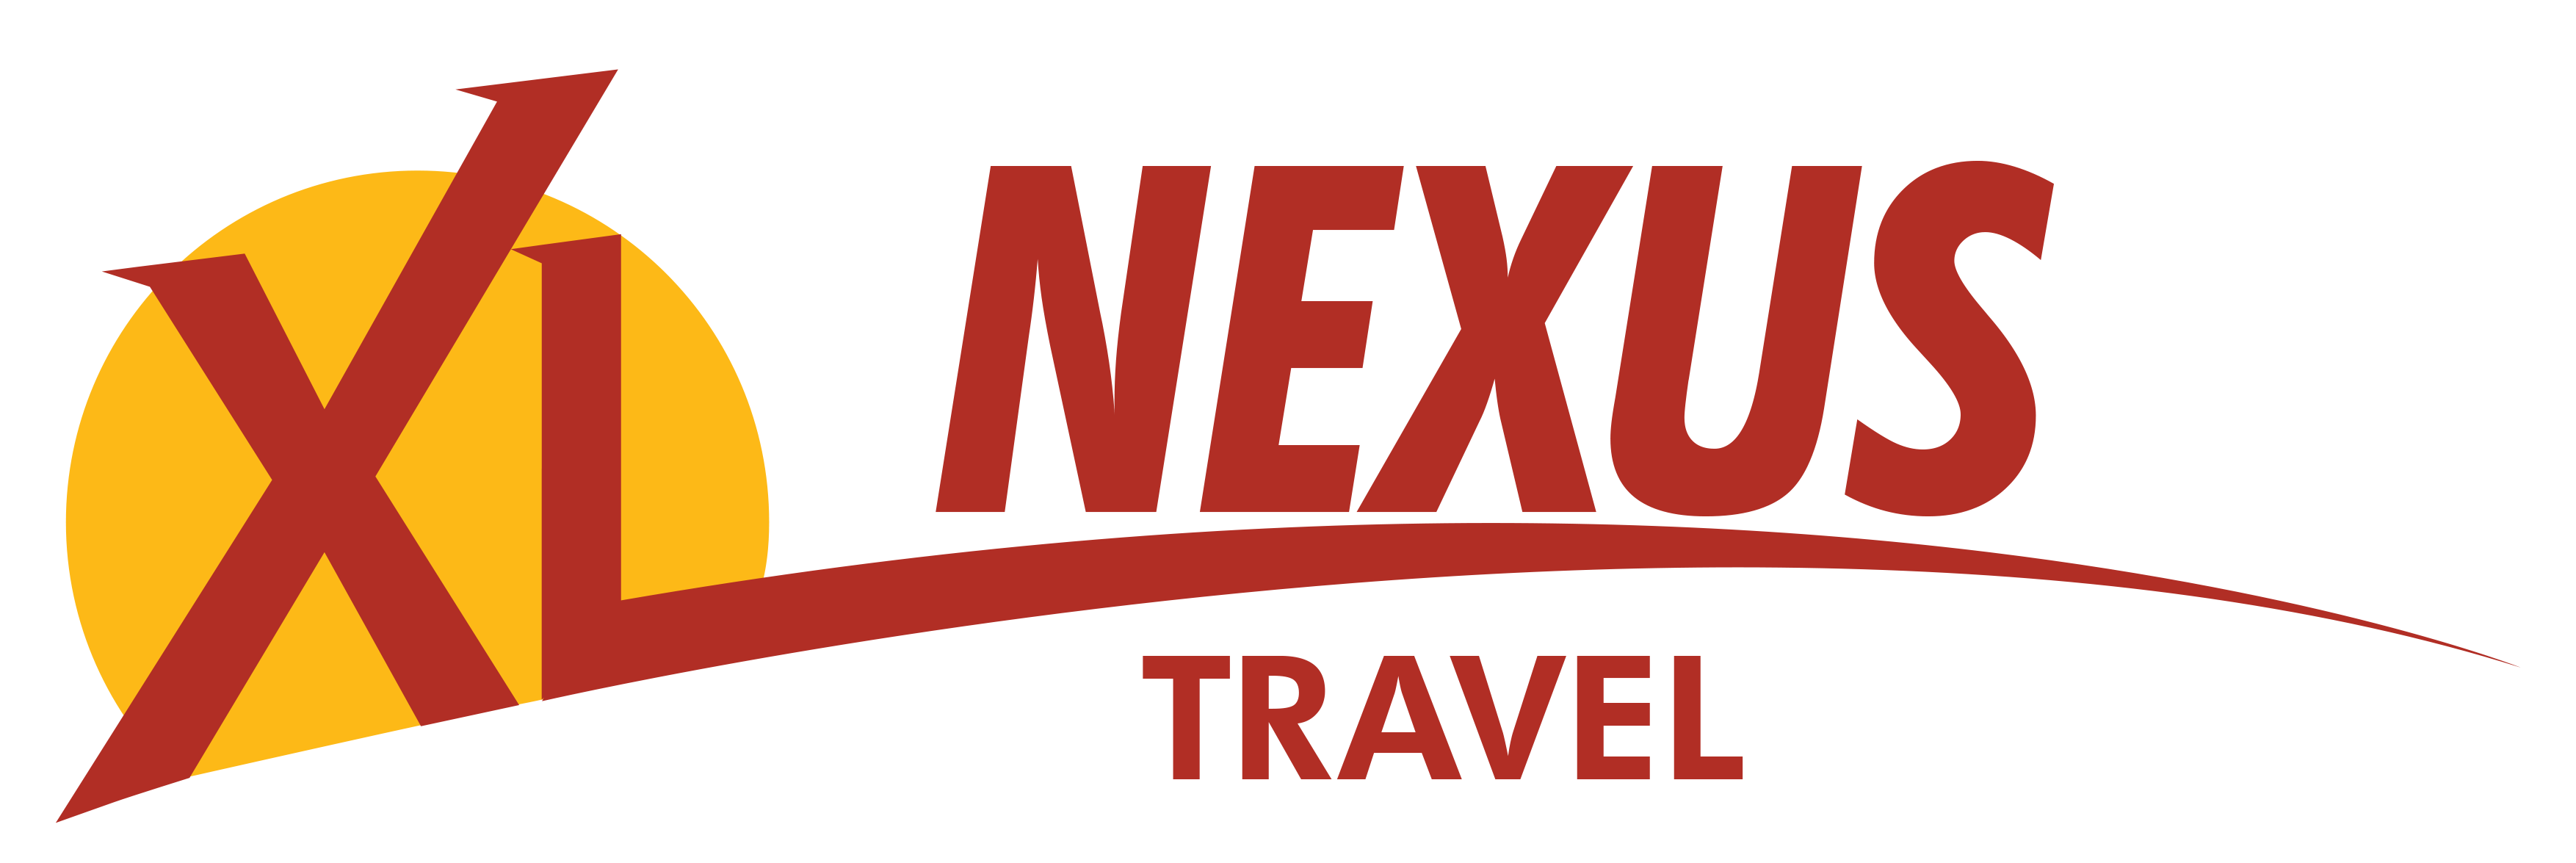 nexus travel prices